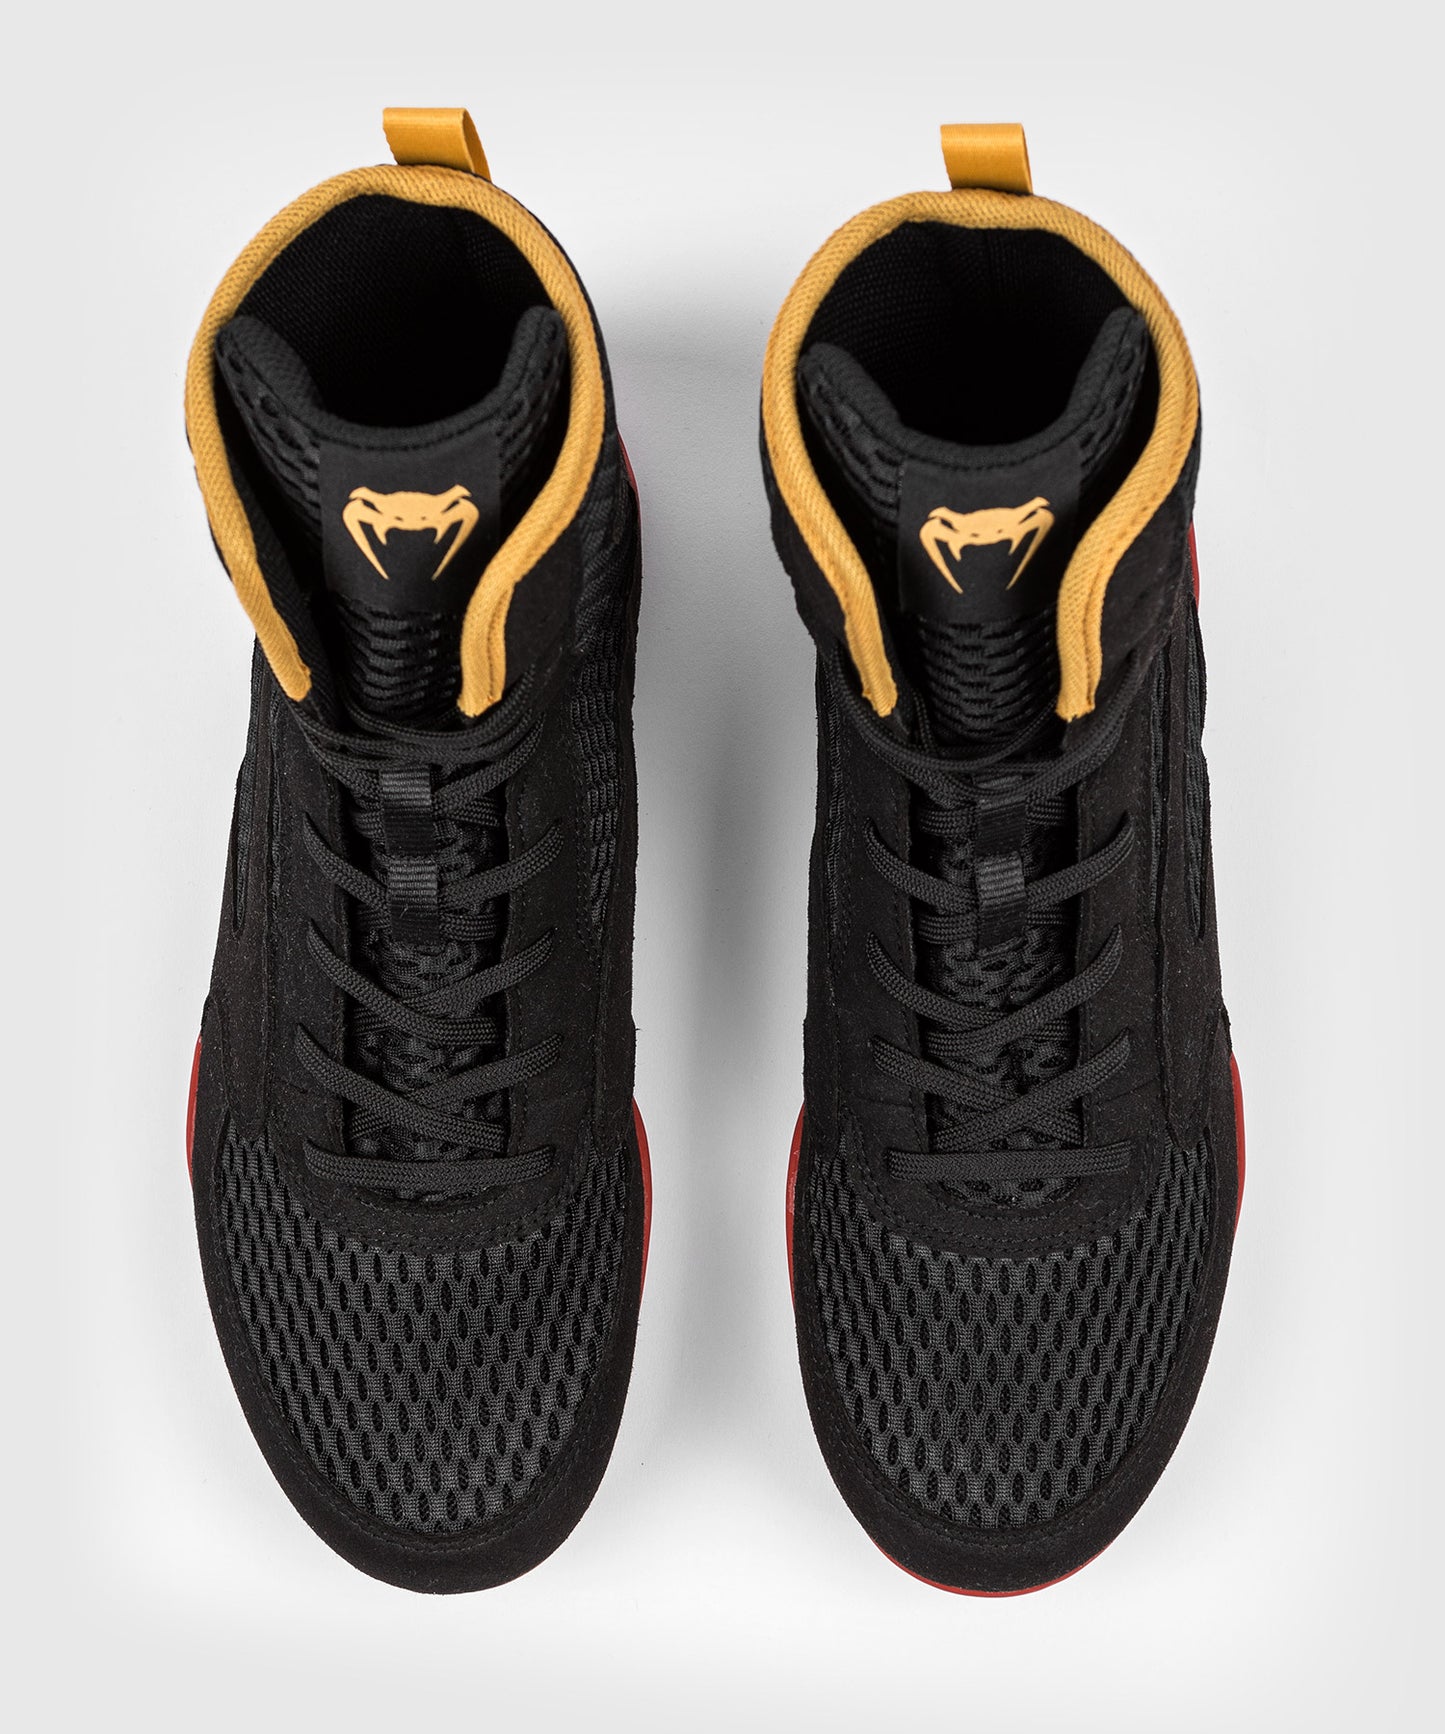 Chaussures de boxe Venum Contender - Noir/Or/Rouge